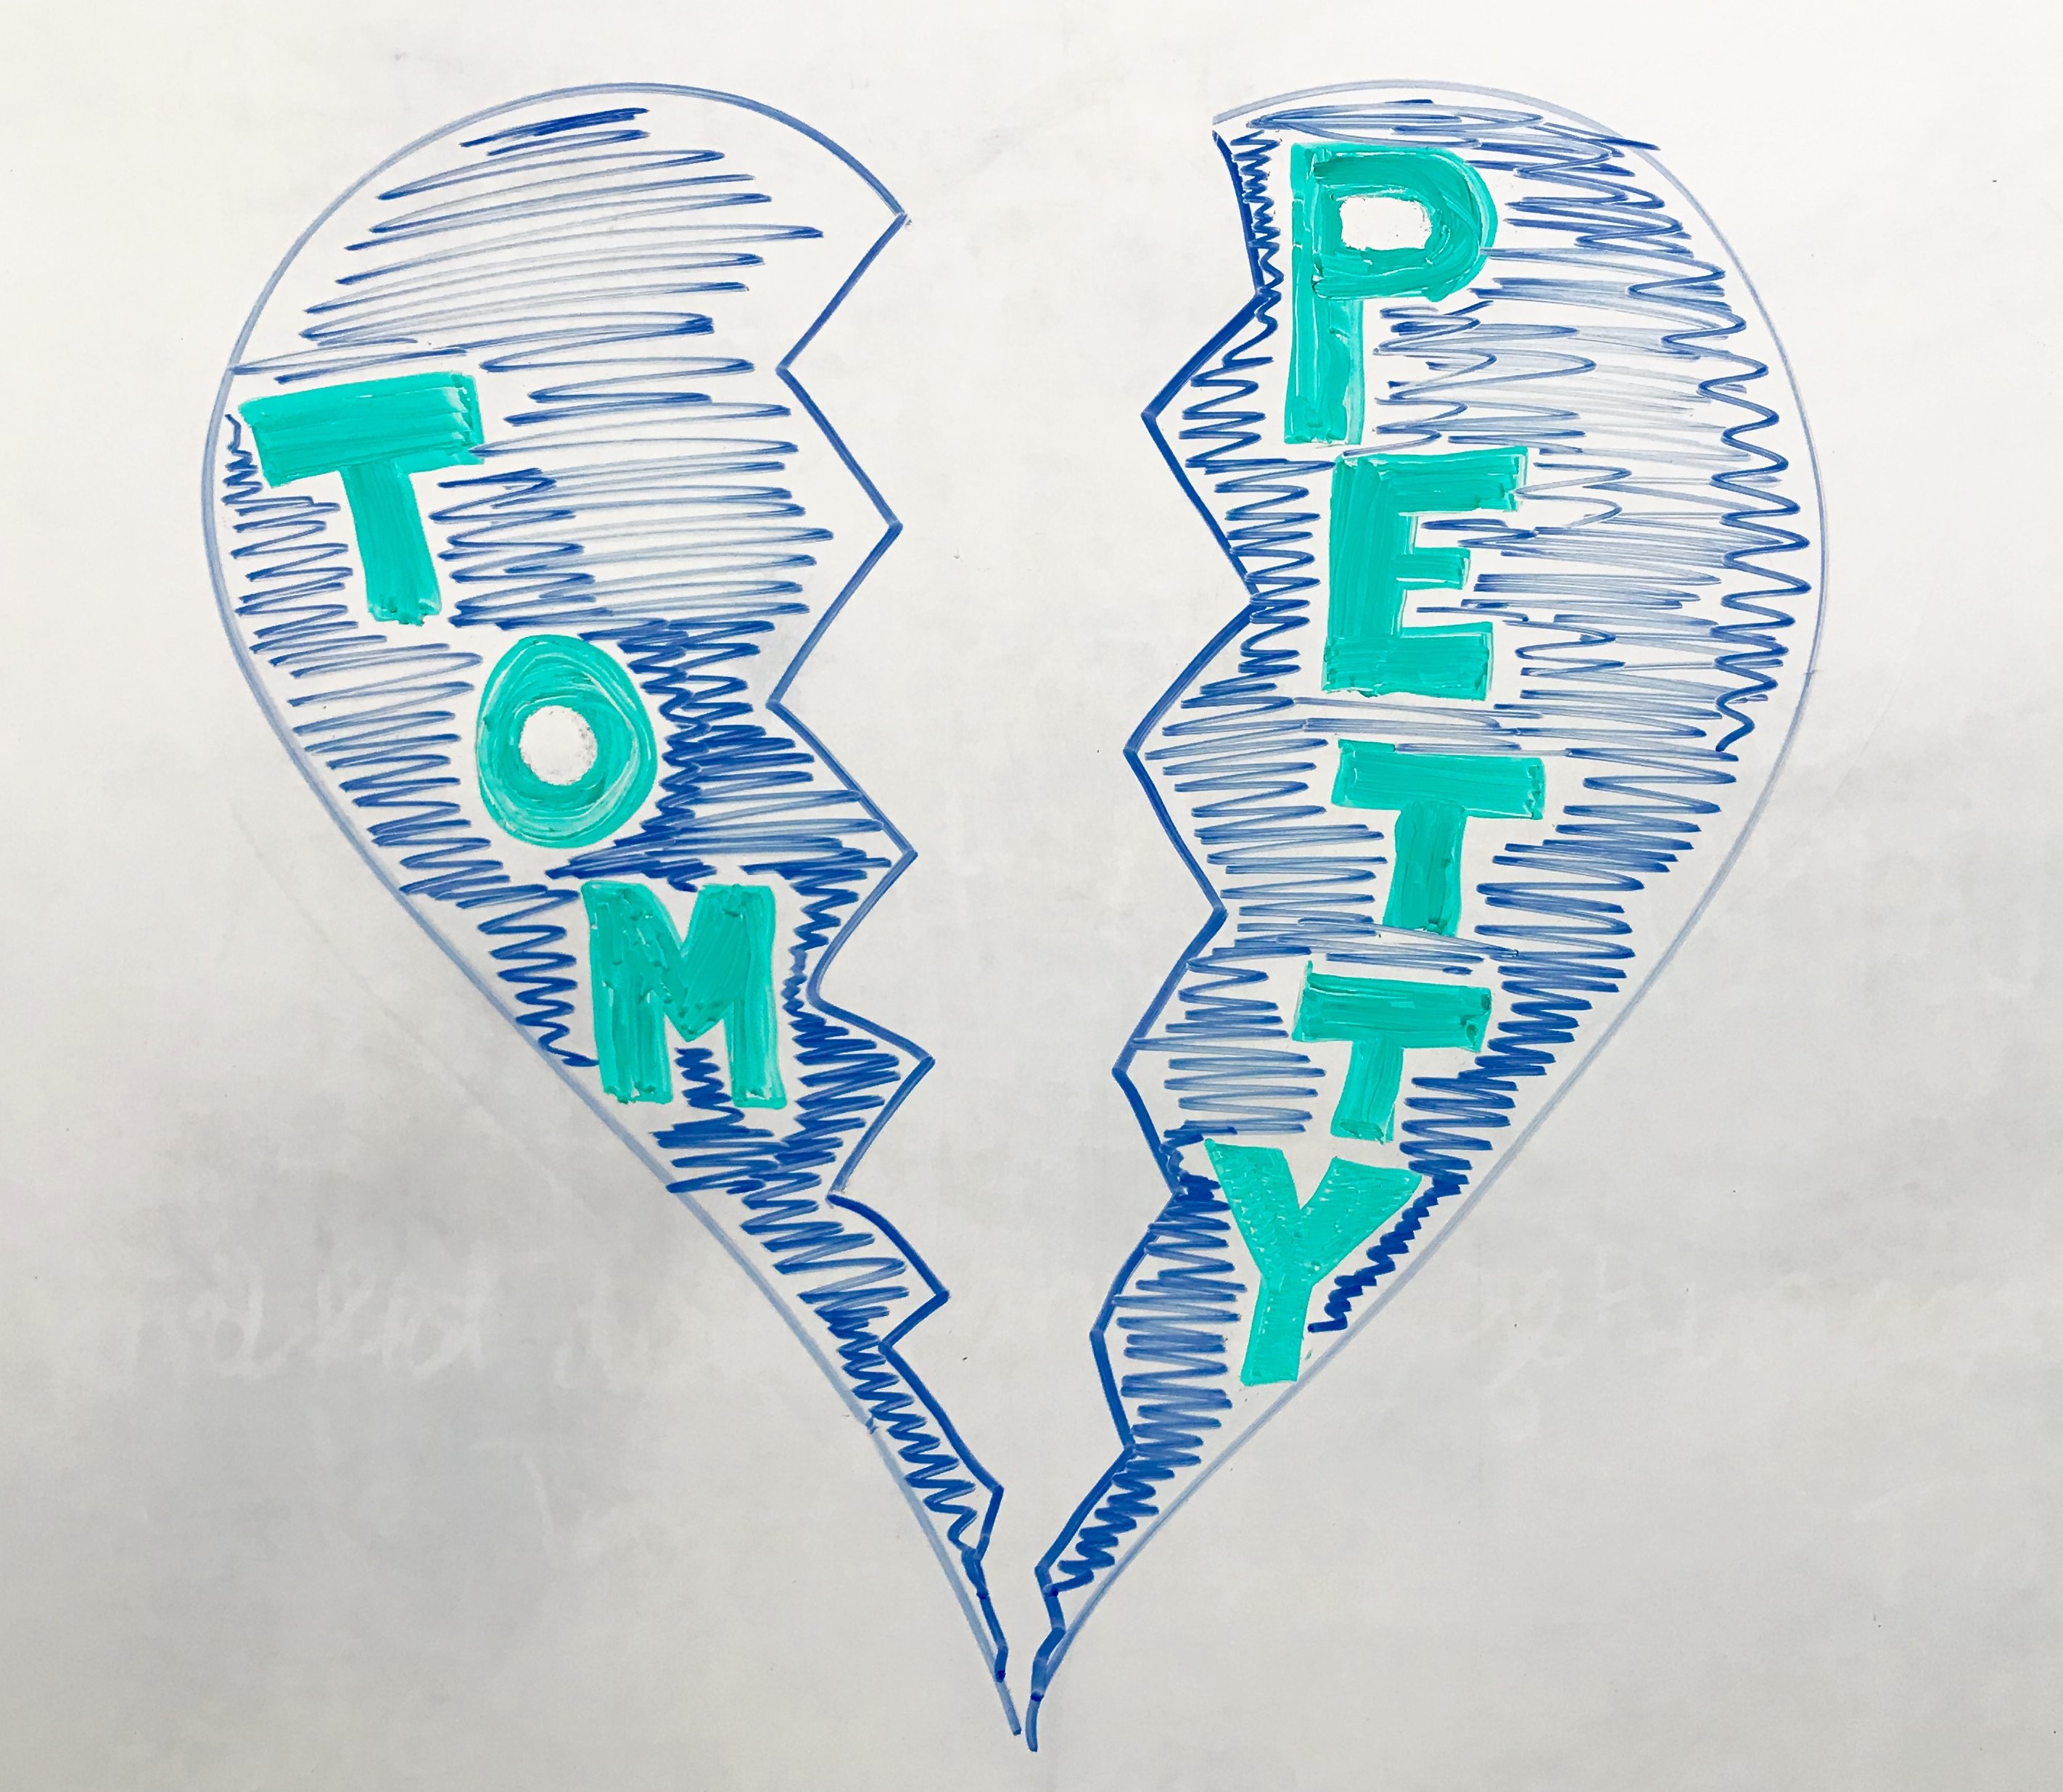 Tom Petty Heartbreak Drawing - by Nick Fosman